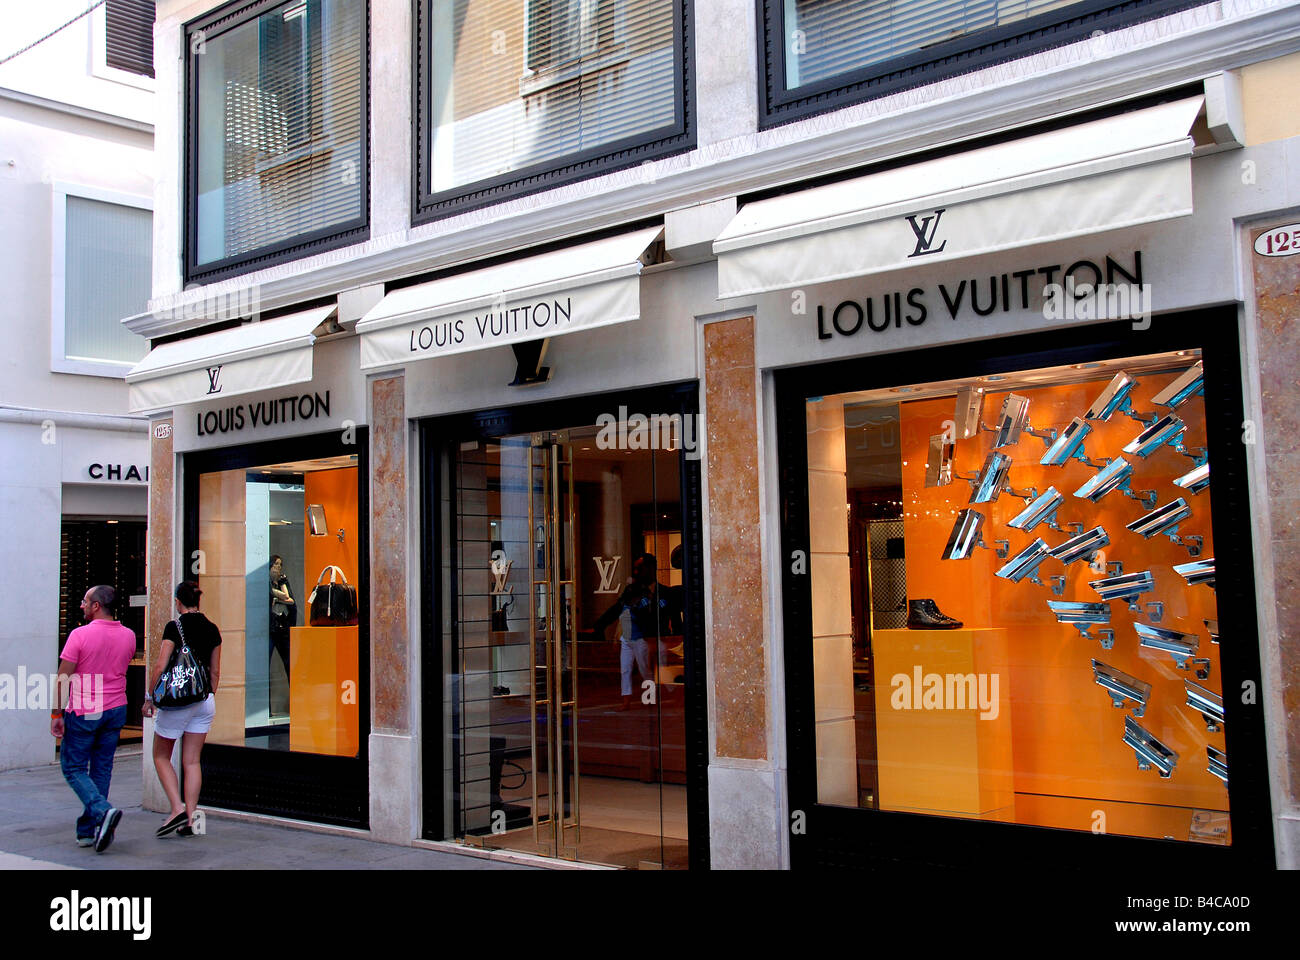 Louis Vuitton shop, Venice, Italy Stock Photo